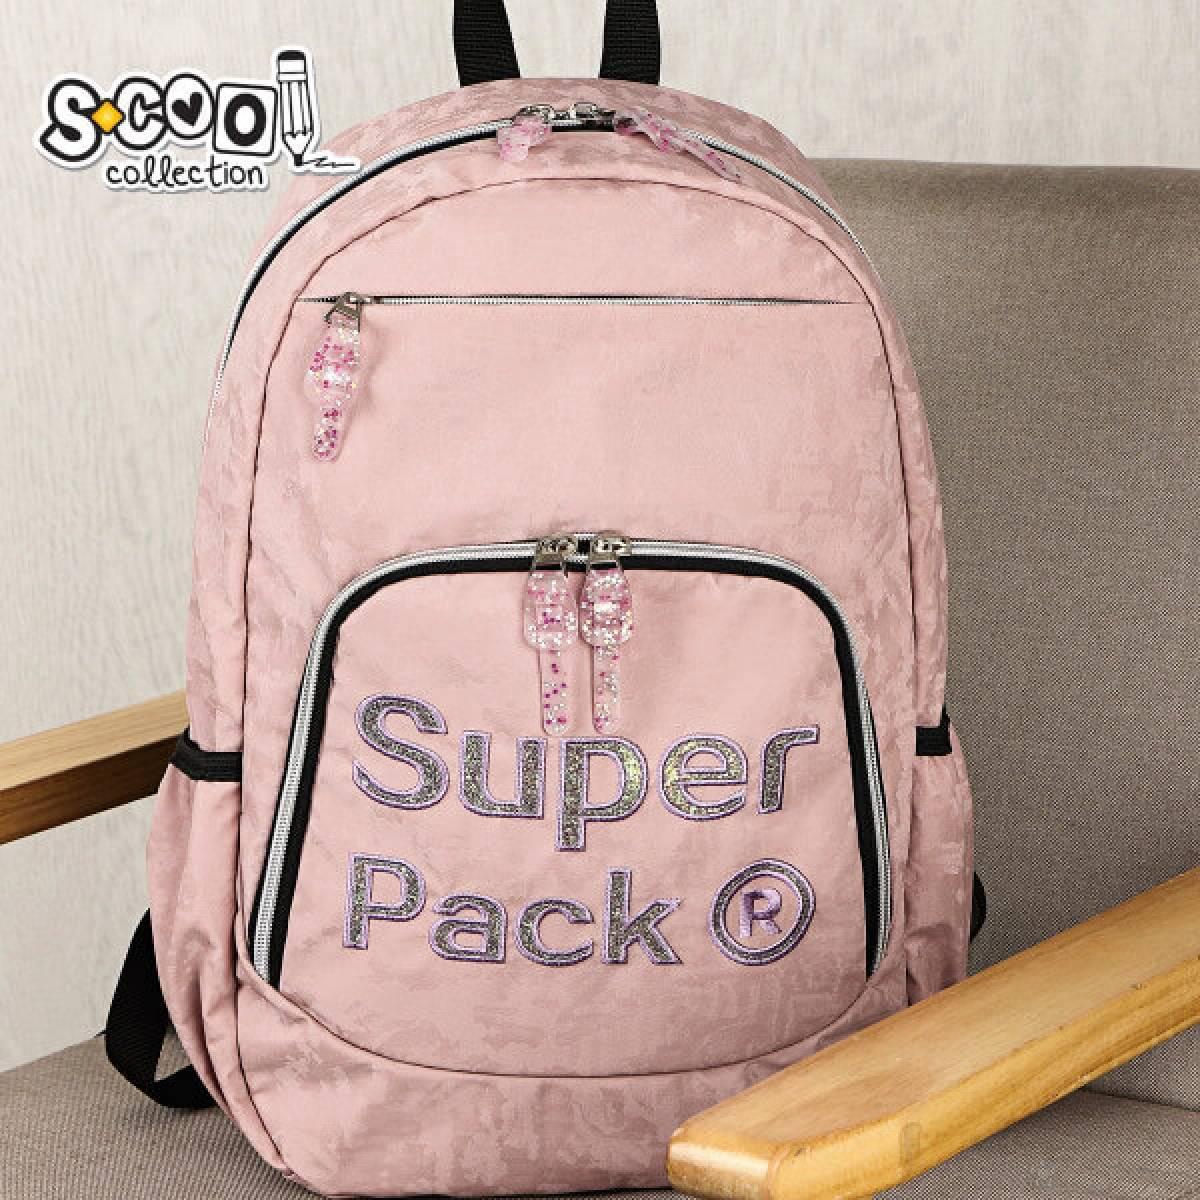 Ranac Teenage Superpack SC1655 